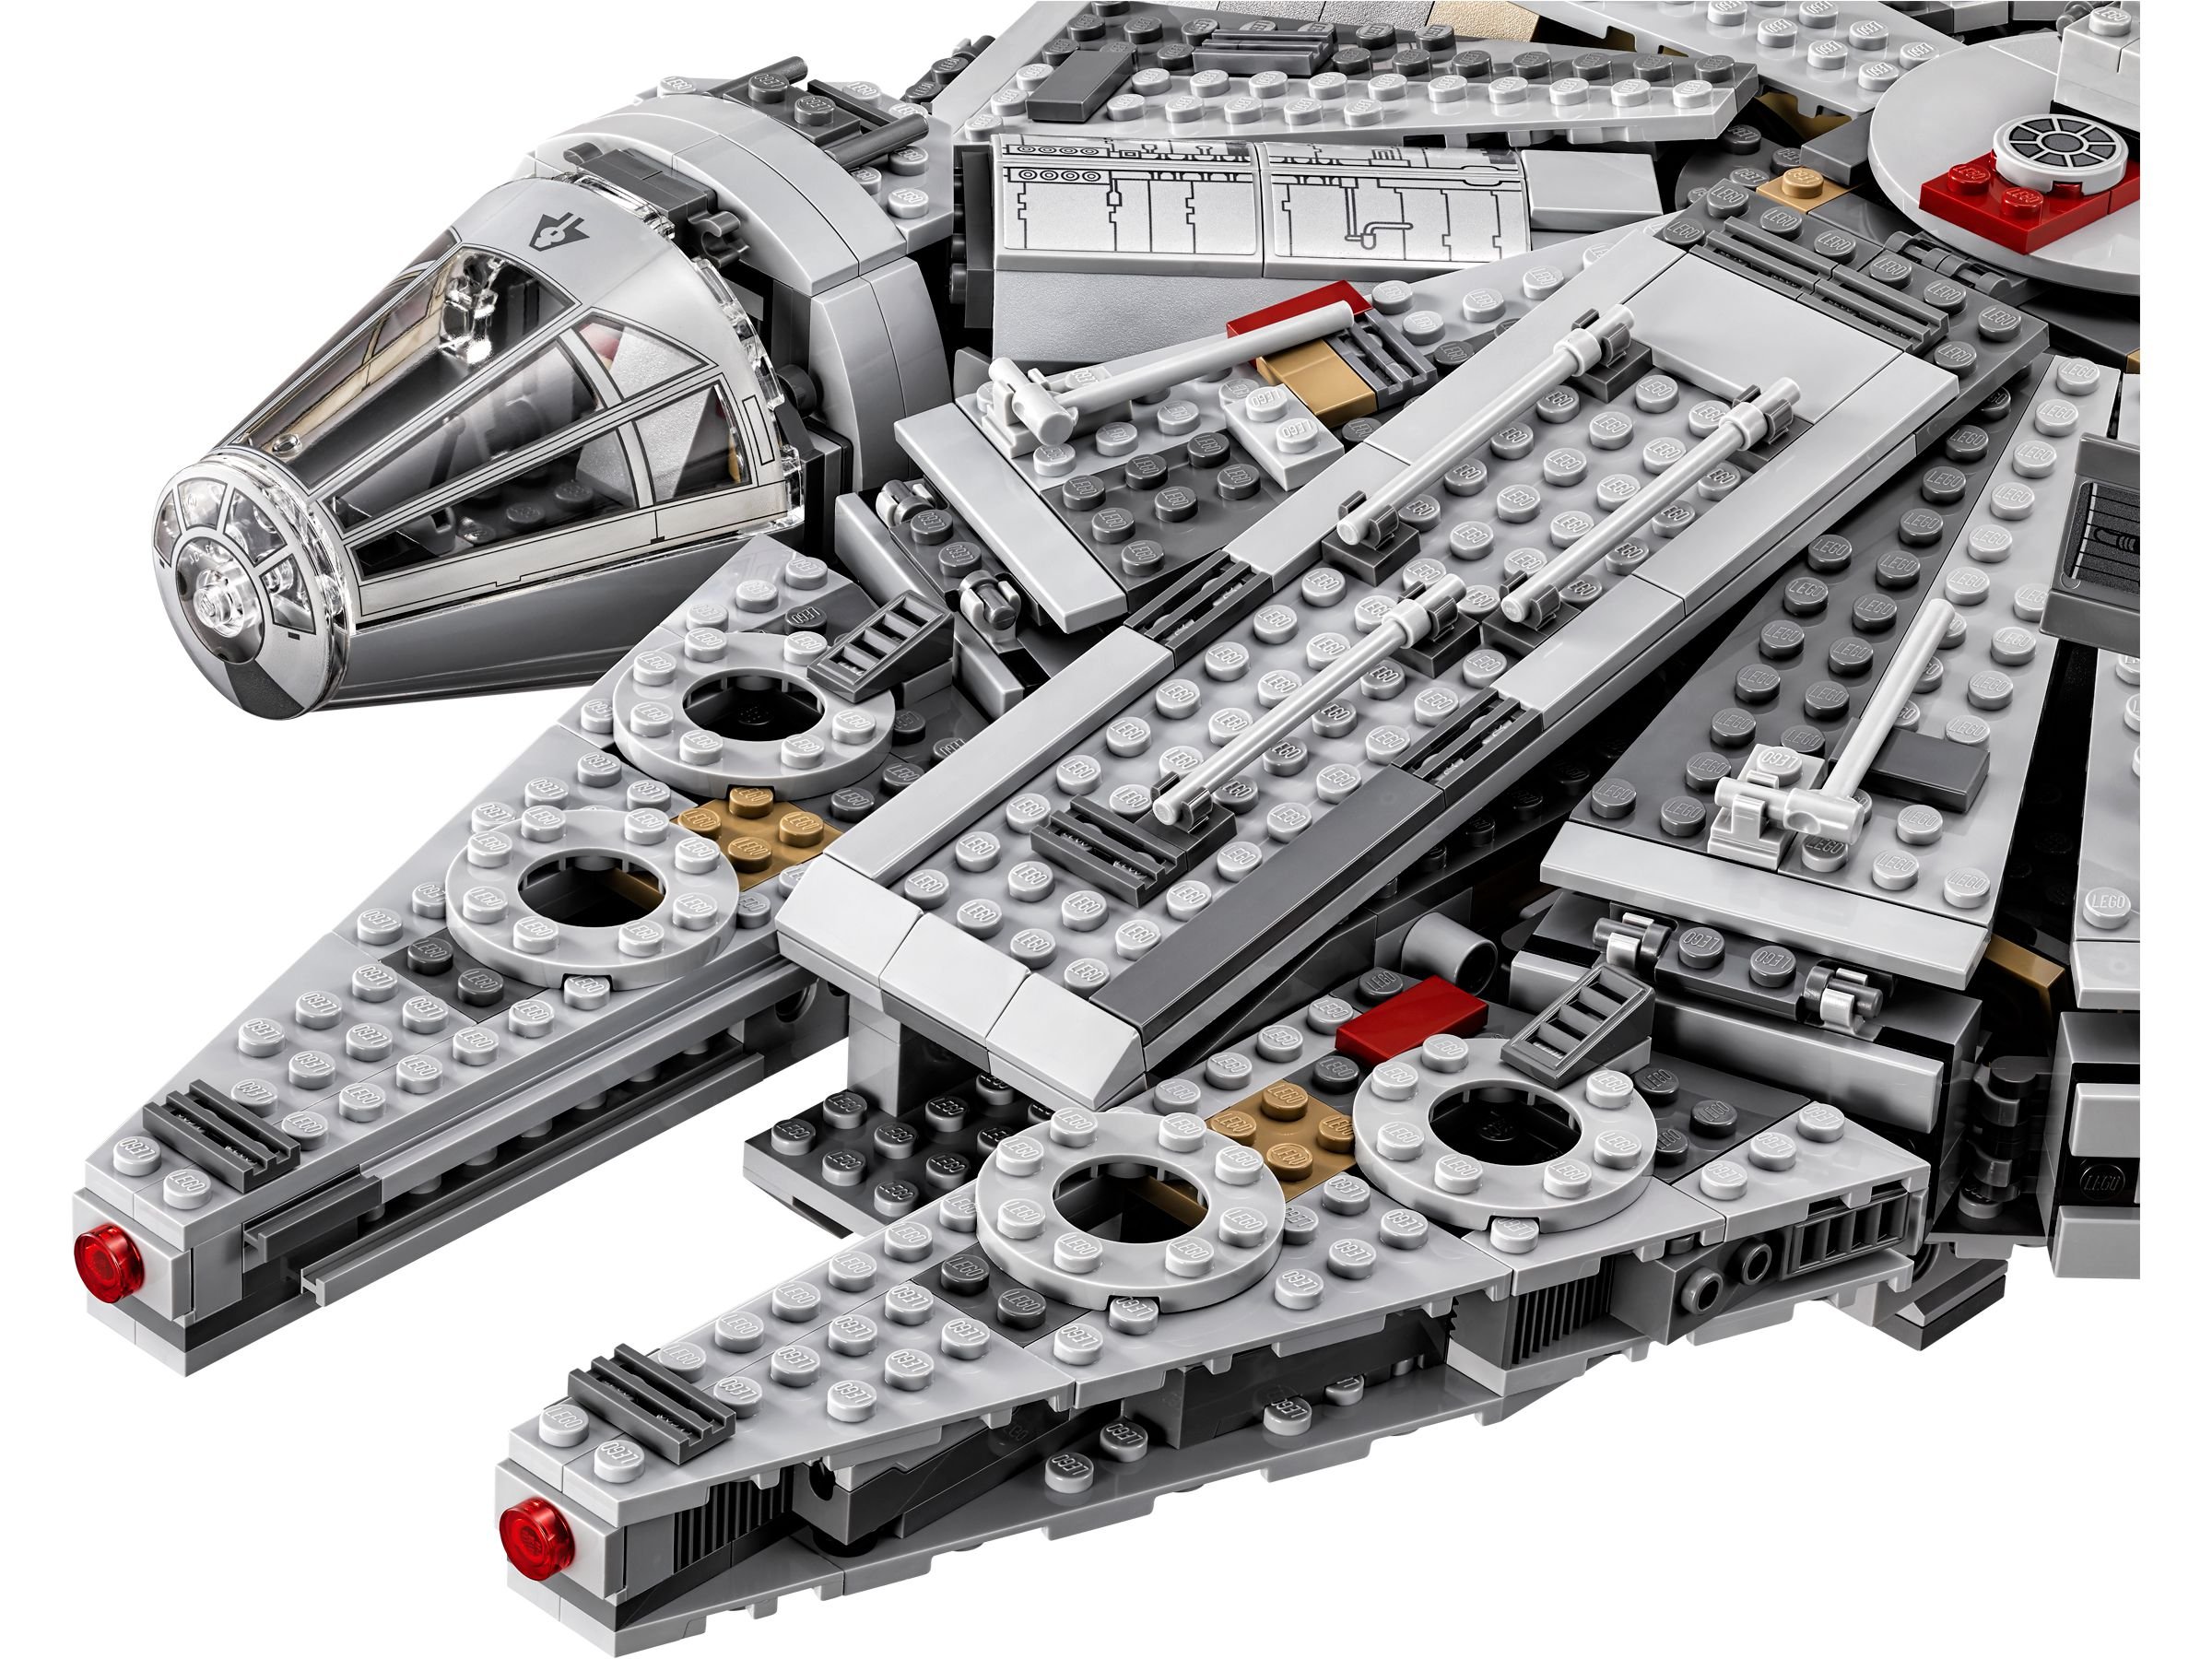 LEGO Star Wars 75105 Millennium Falcon™ LEGO_75105_alt3.jpg